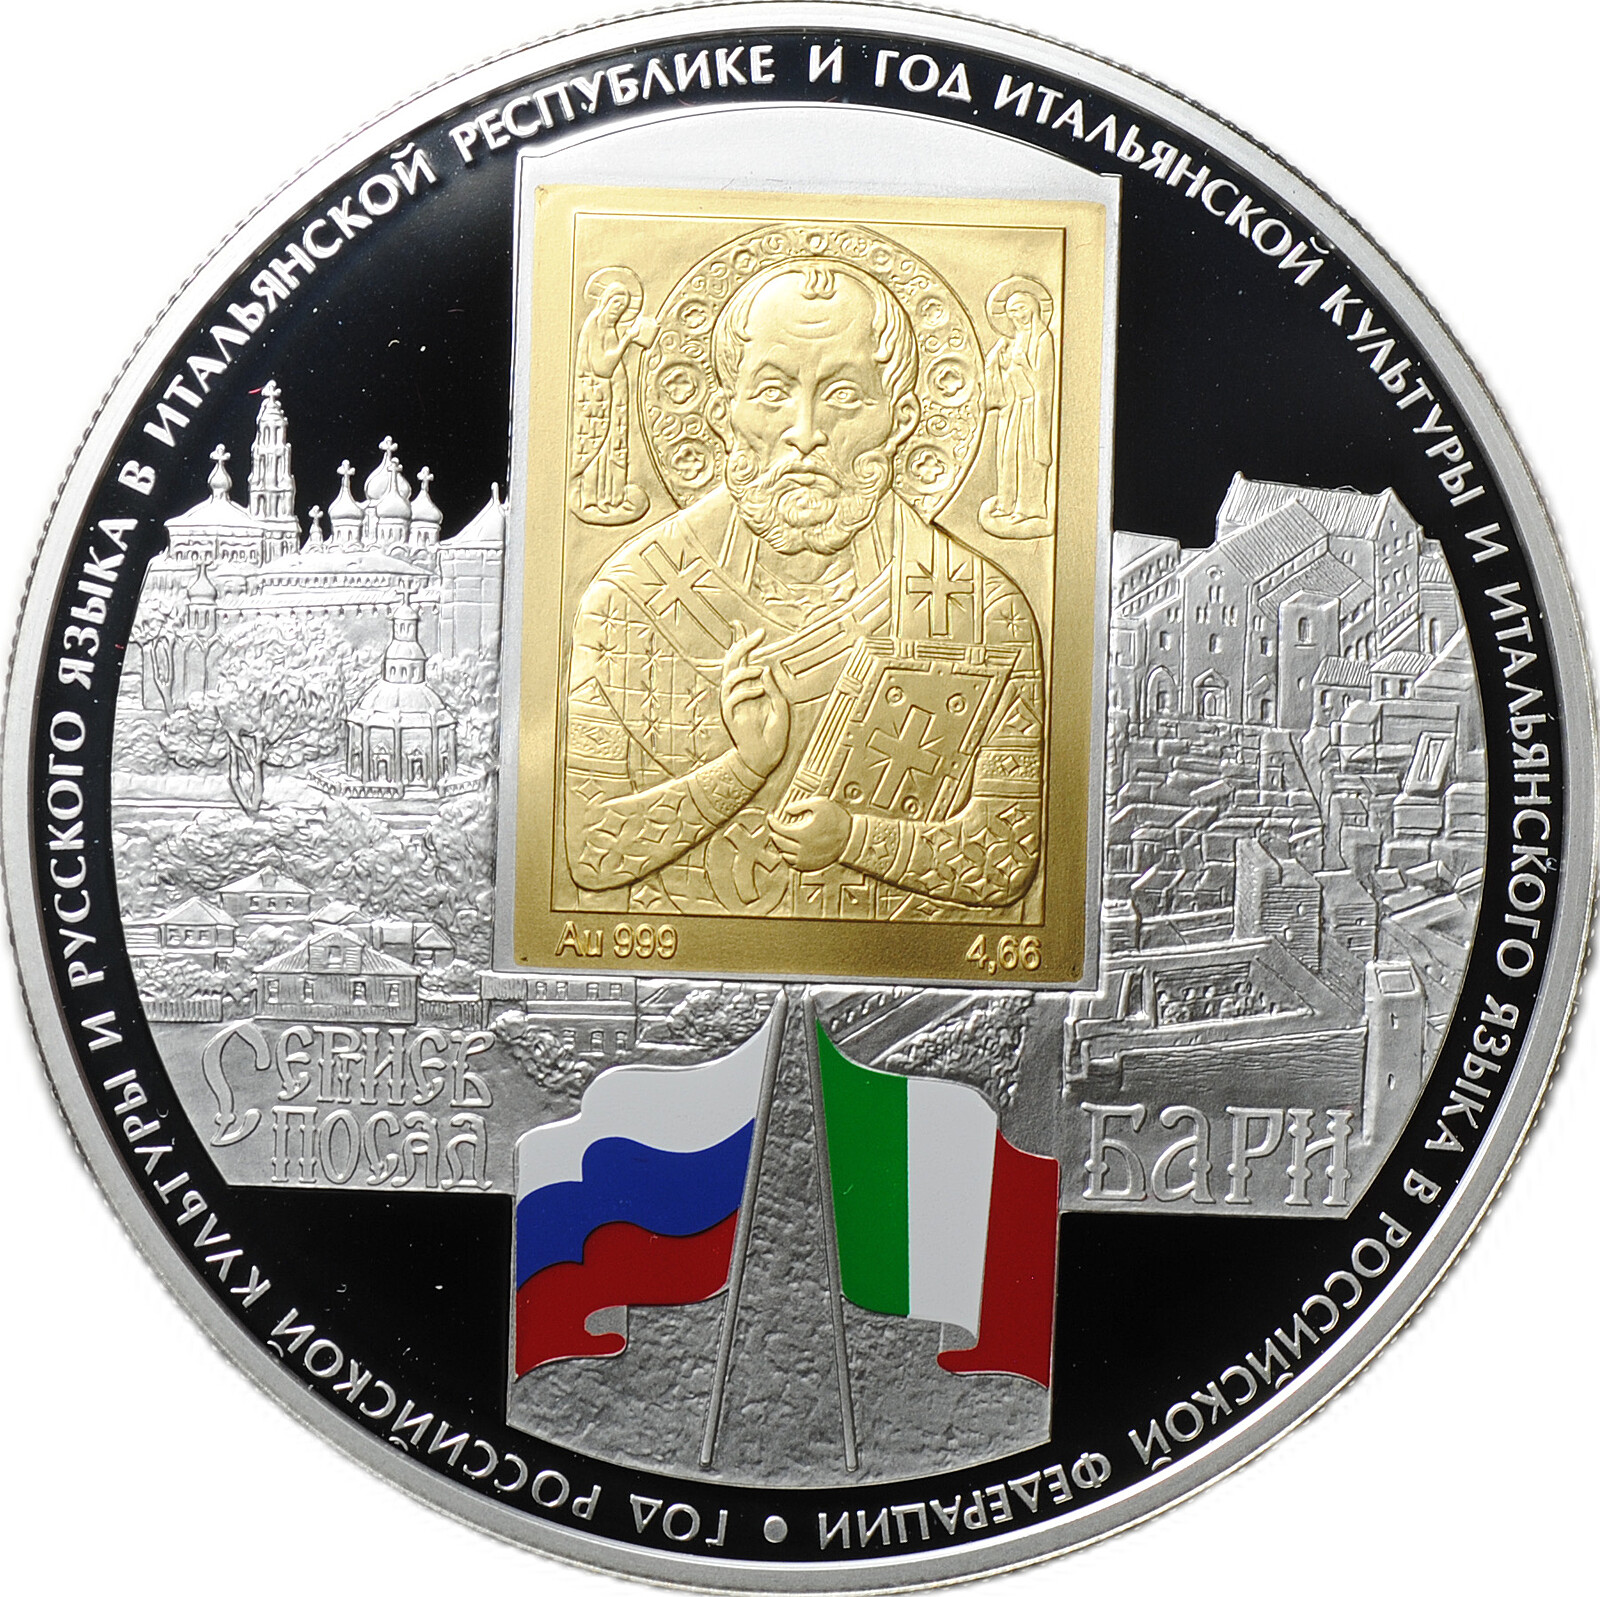 Монета 25 рублей 2011 СПМД Год итальянской культуры и итальянского языка в России